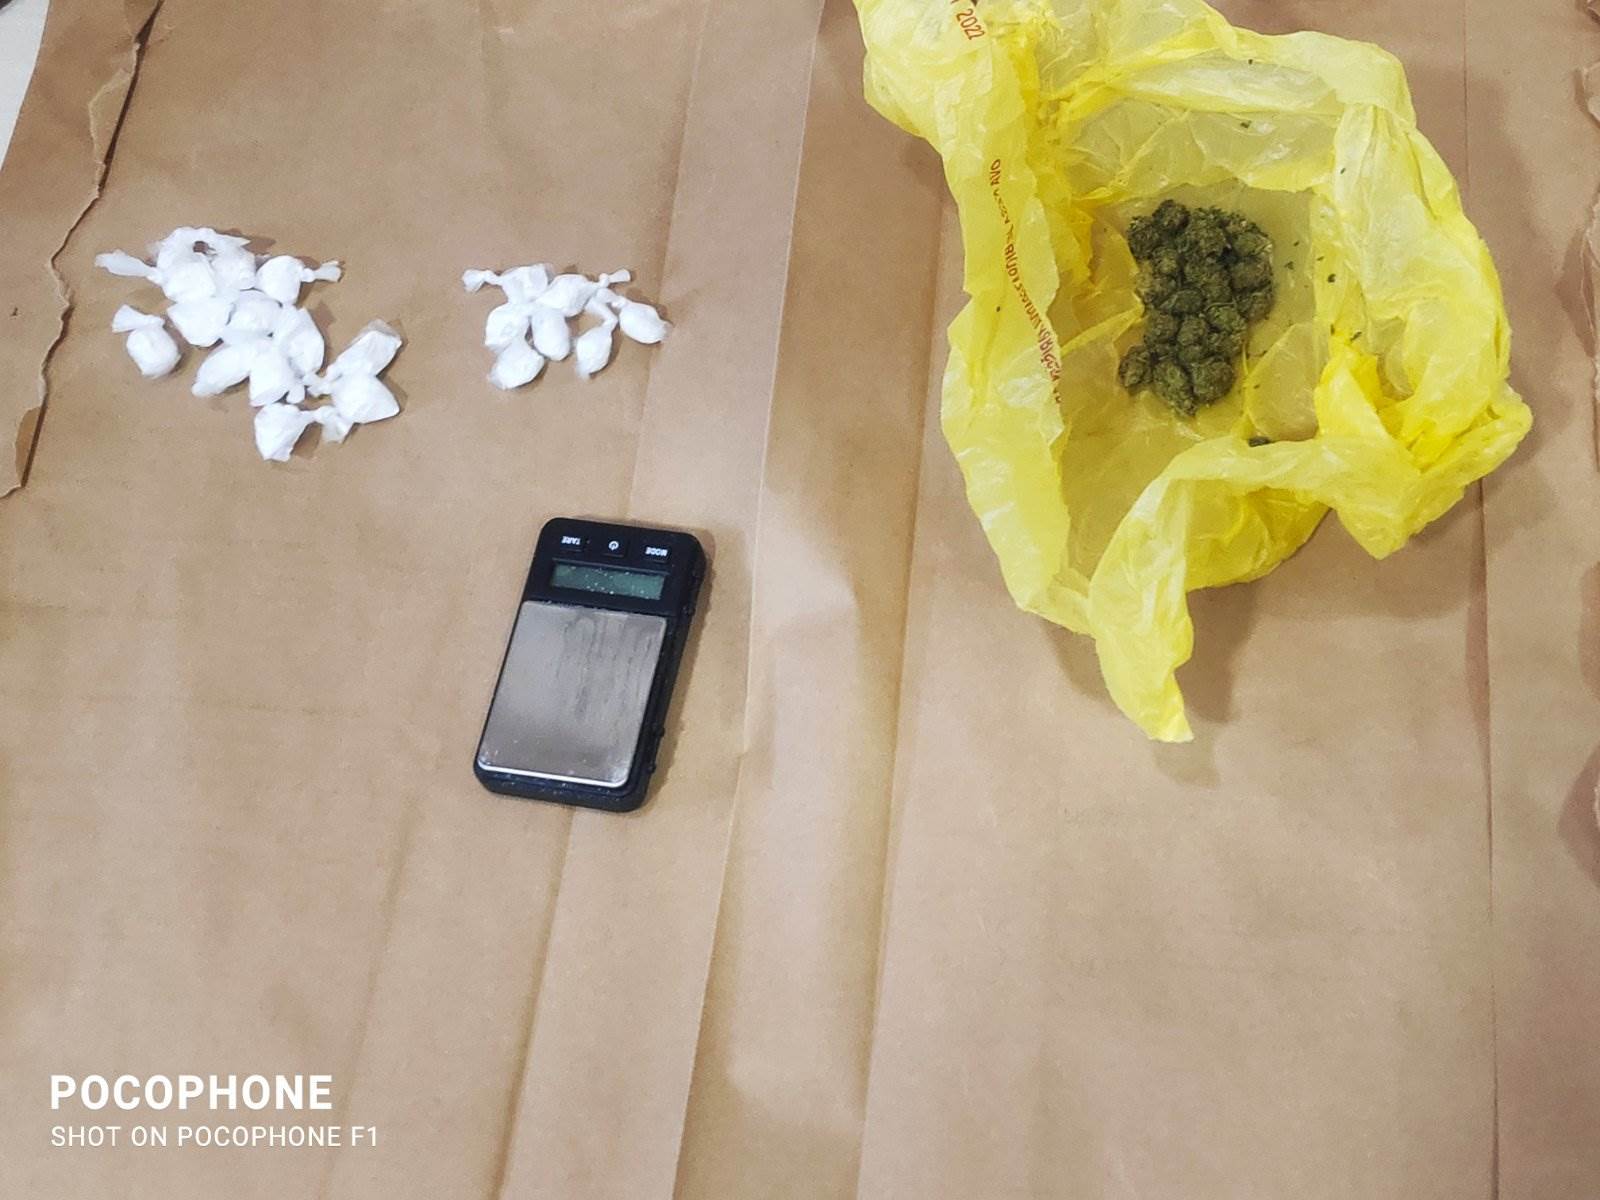  pretresom pronađen kokain i marihuana, uhapšen osumnjičeni za  uličnu prodaju narkotika u budvi 